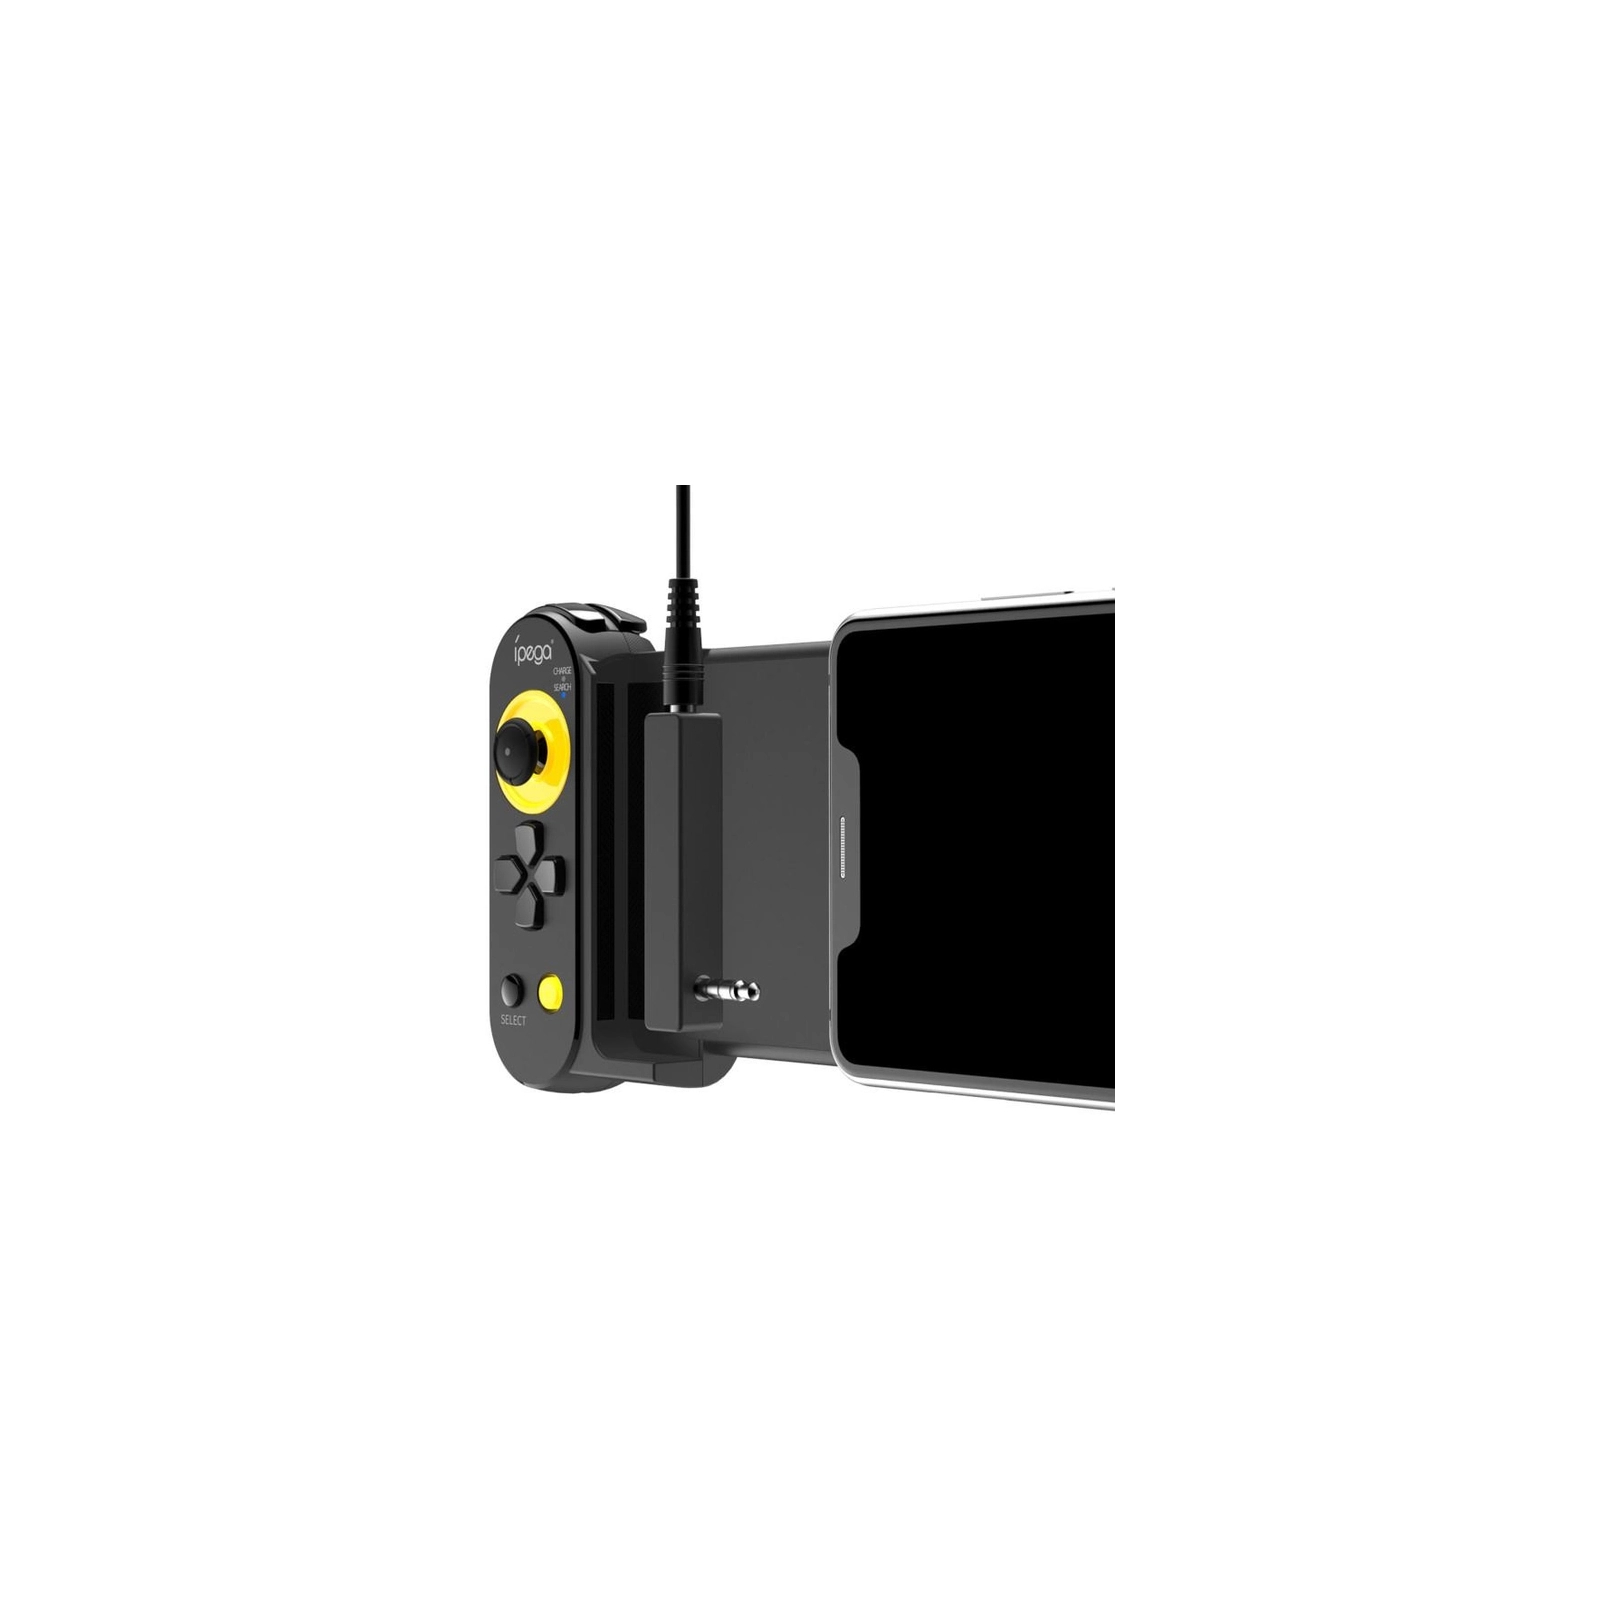 Геймпад iPega PG-9167 Bluetooth Black (PG-9167) зображення 6